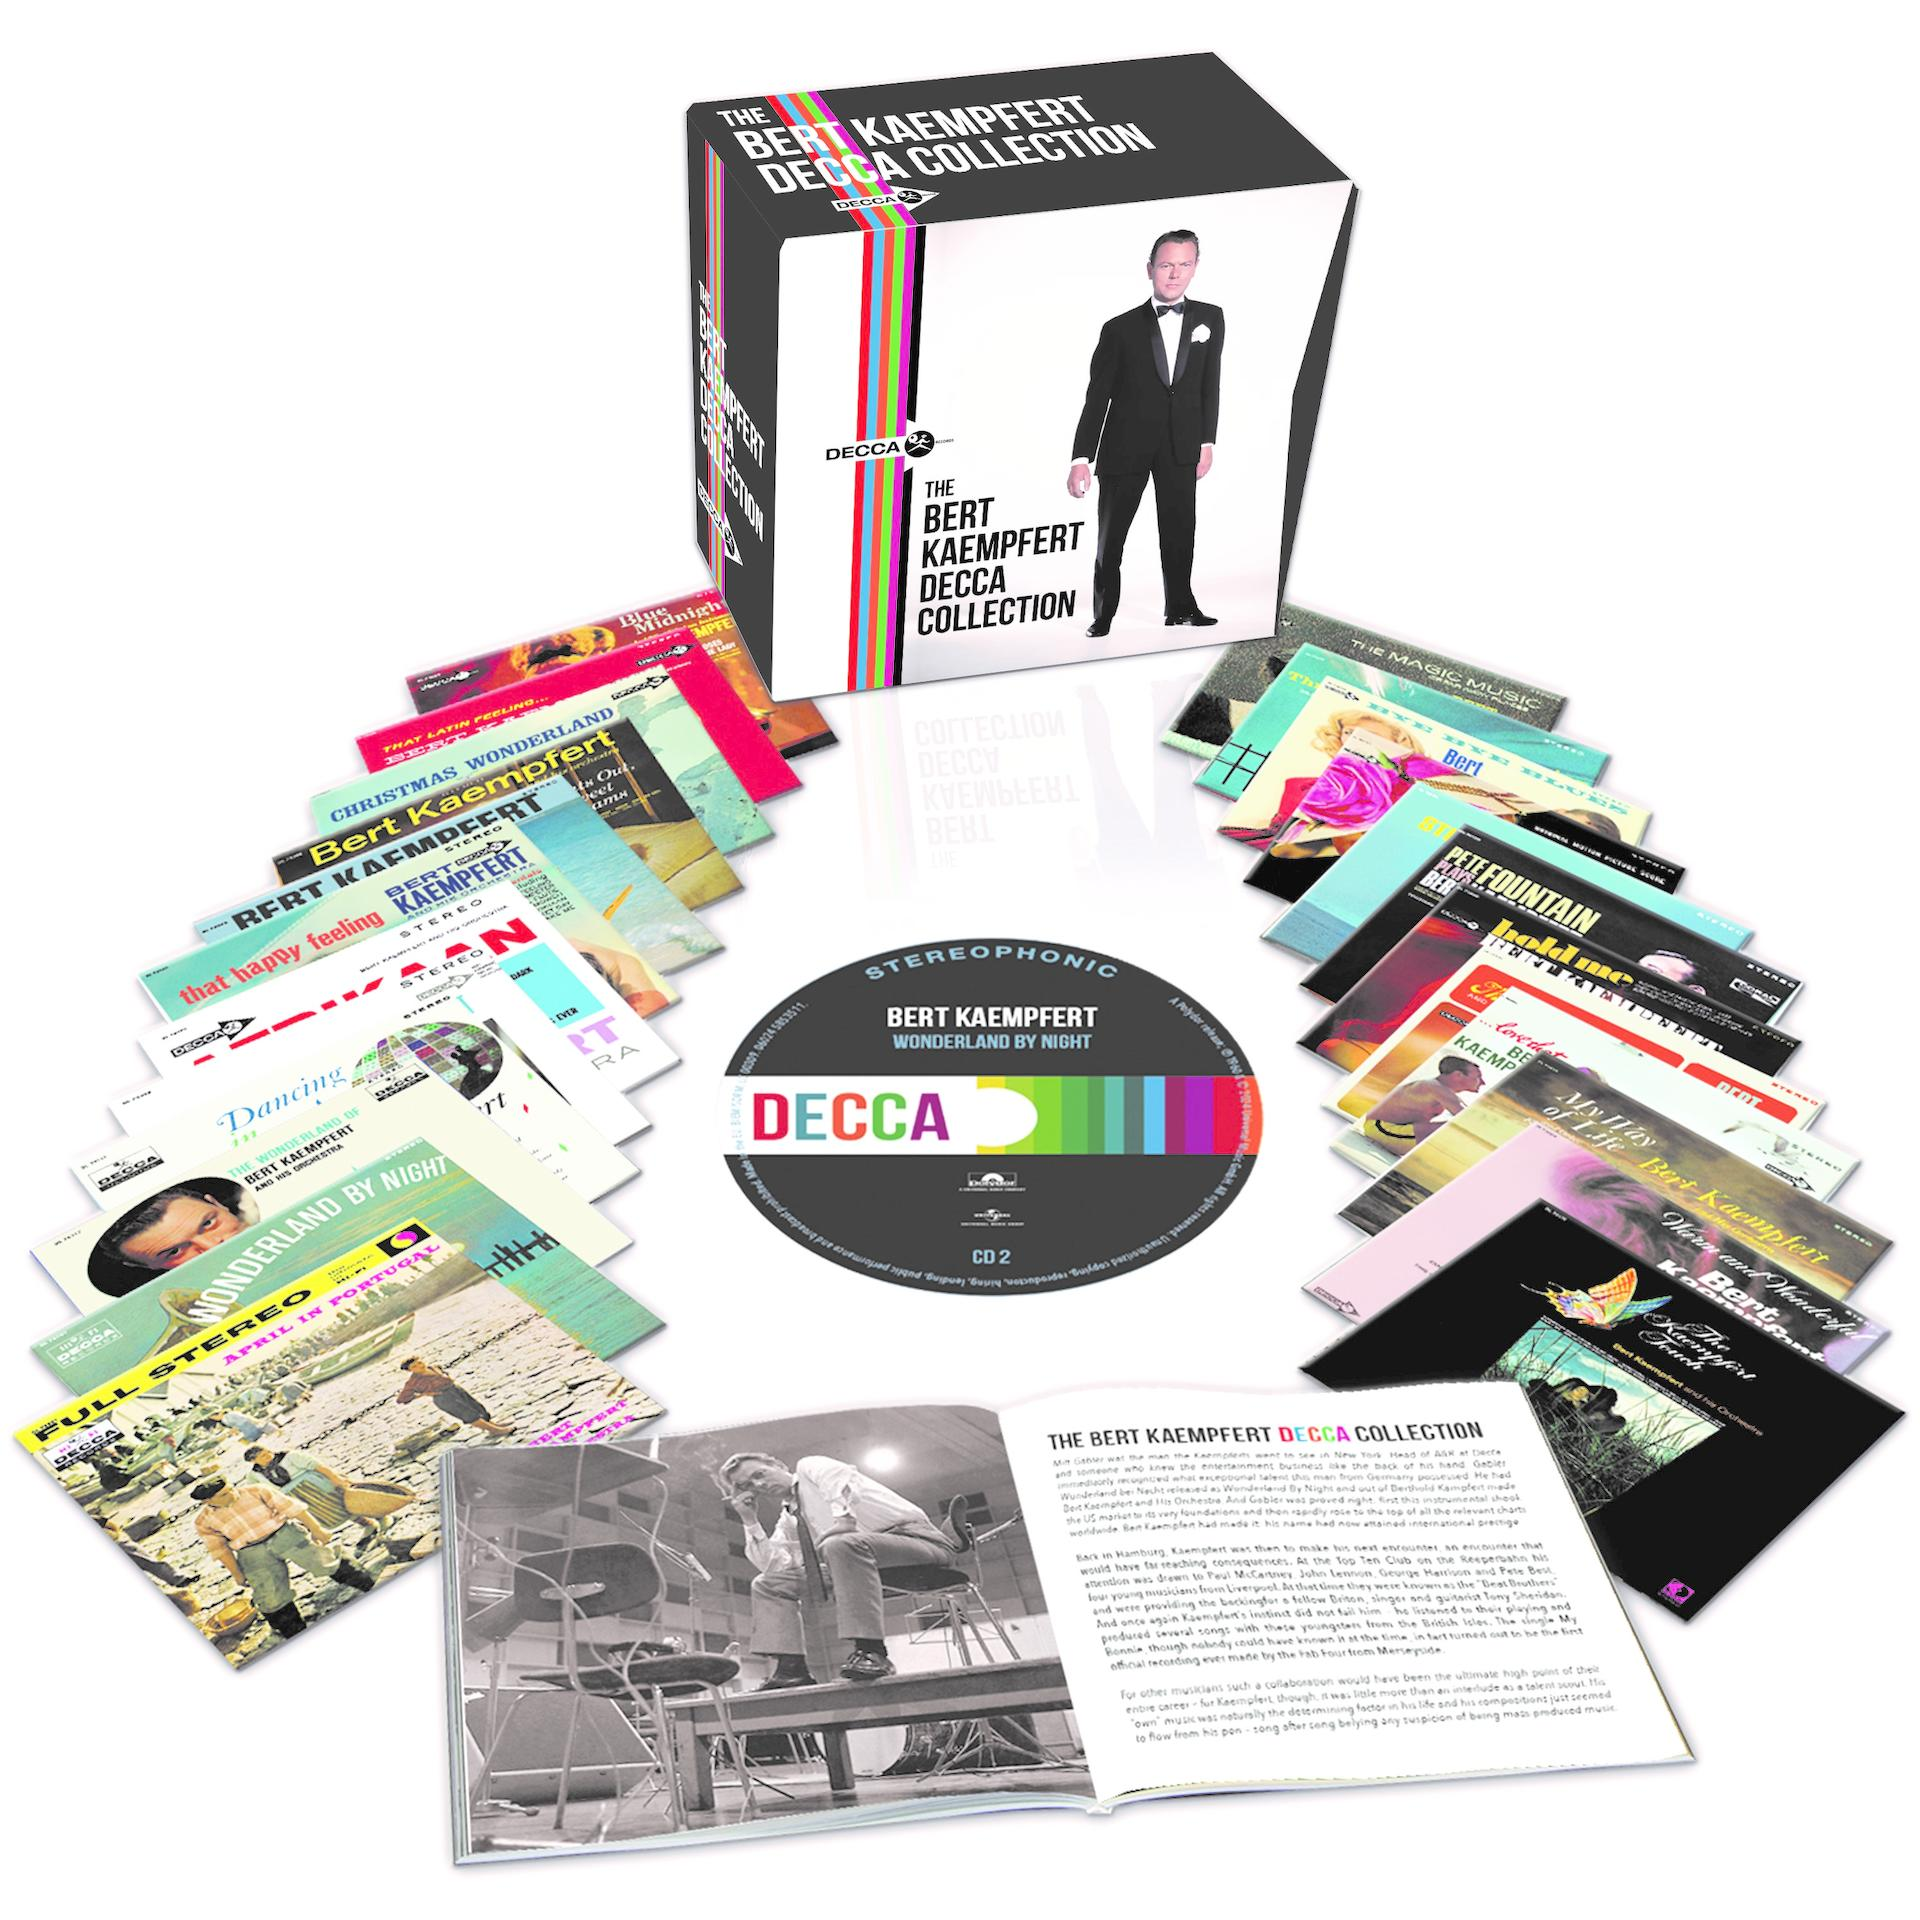 Bert Kaempfert - The (24 - Bert Decca Kaempfert Collection CD Box) (CD)